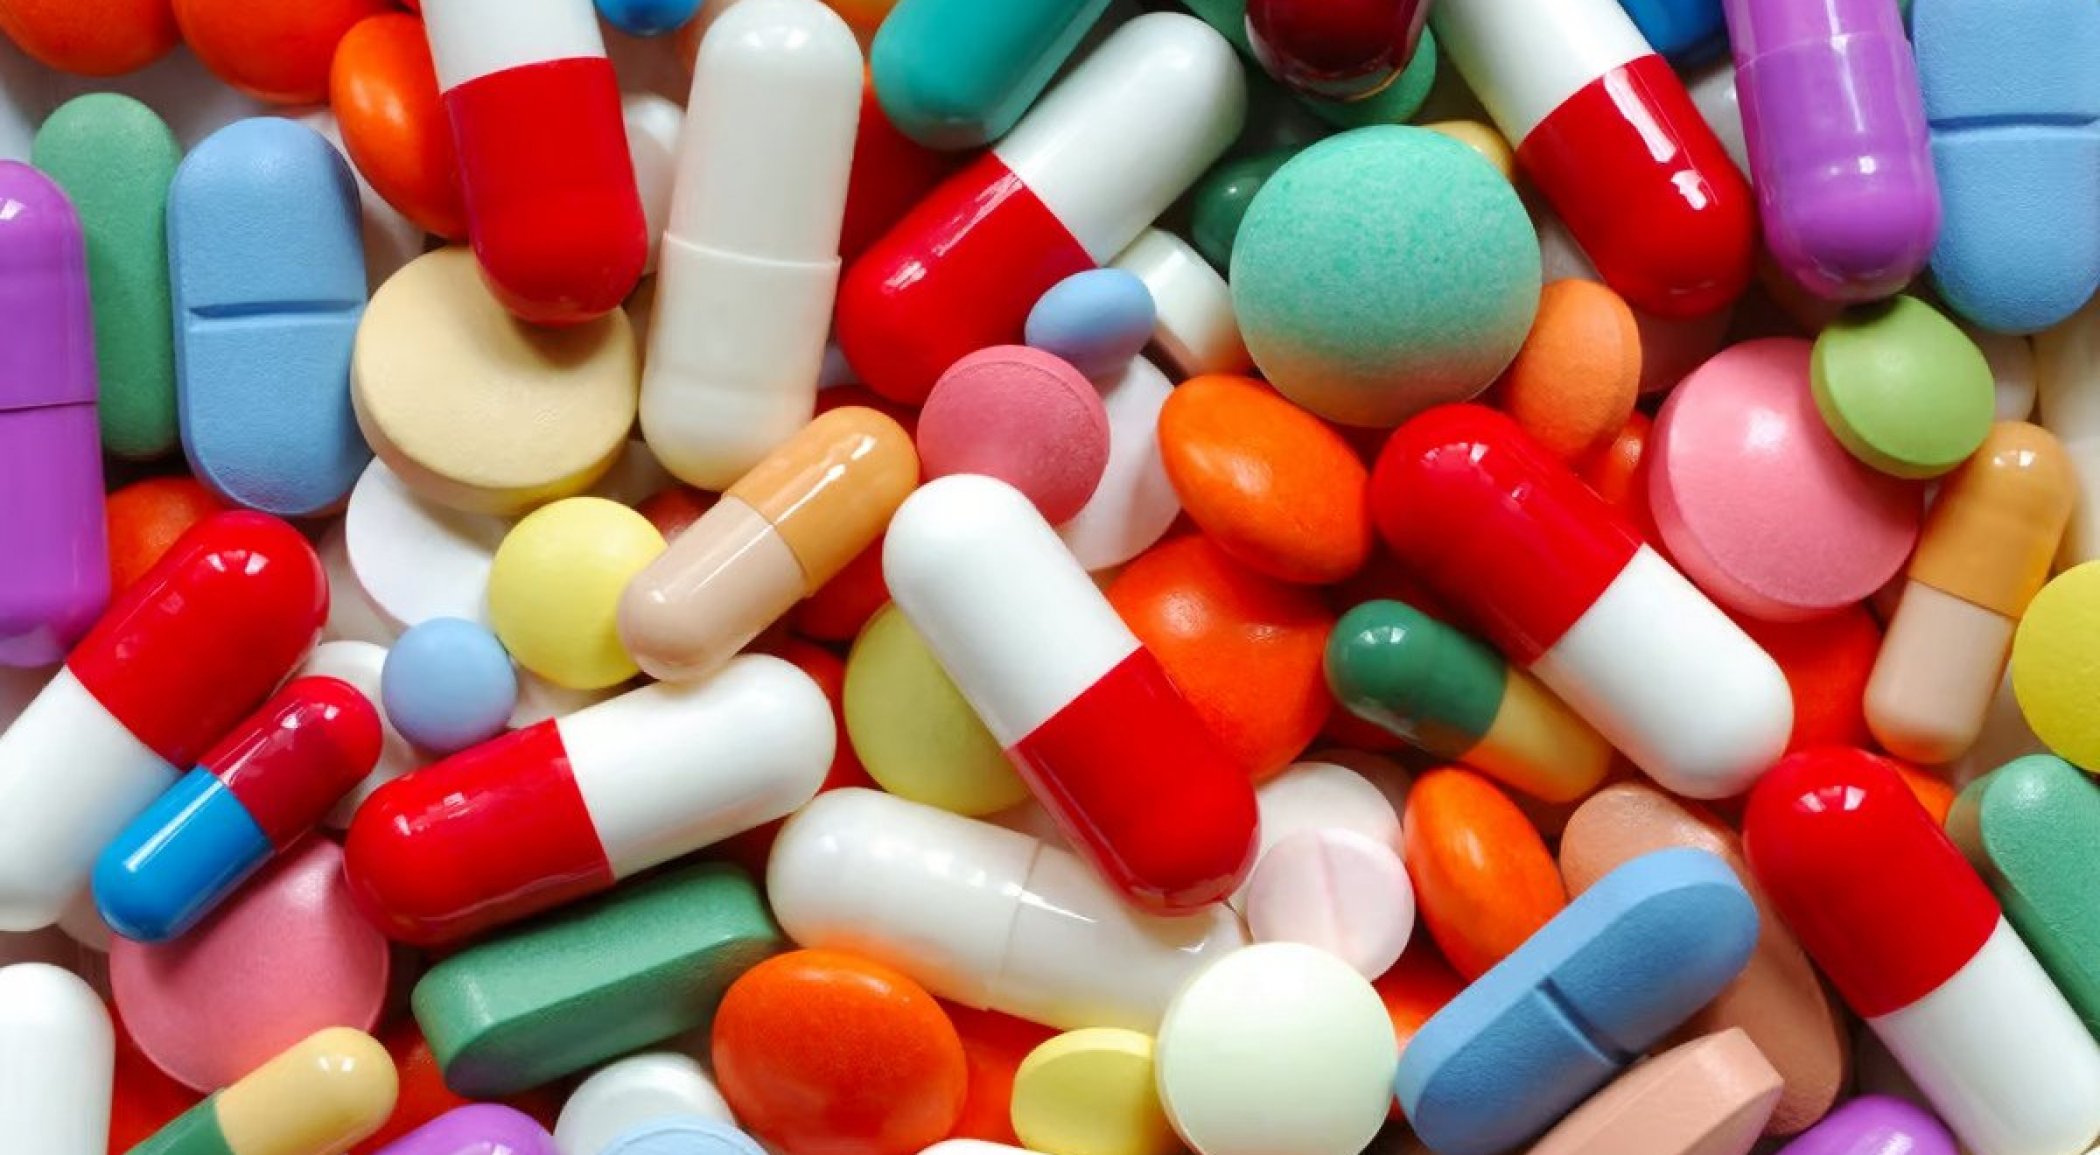 https://mail.mikro-makro.net/bilimsel-arastirma-antidepresanlar-antibiyotik-direncine-katkida-bulunuyor